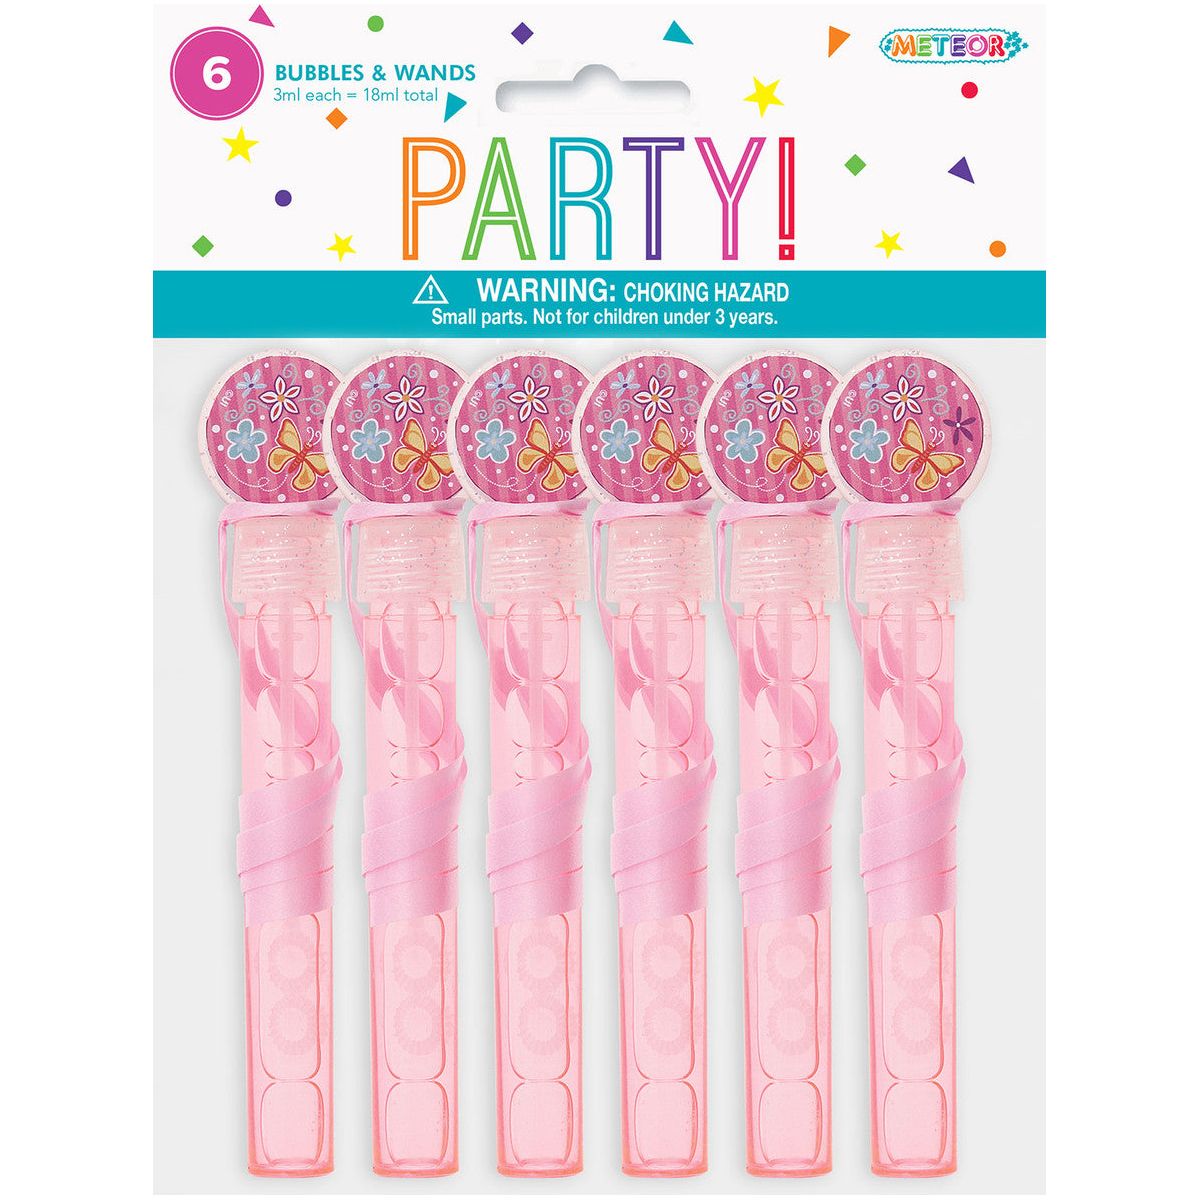 Bubbles & Wands Party Favors Pink 3ml 6pk